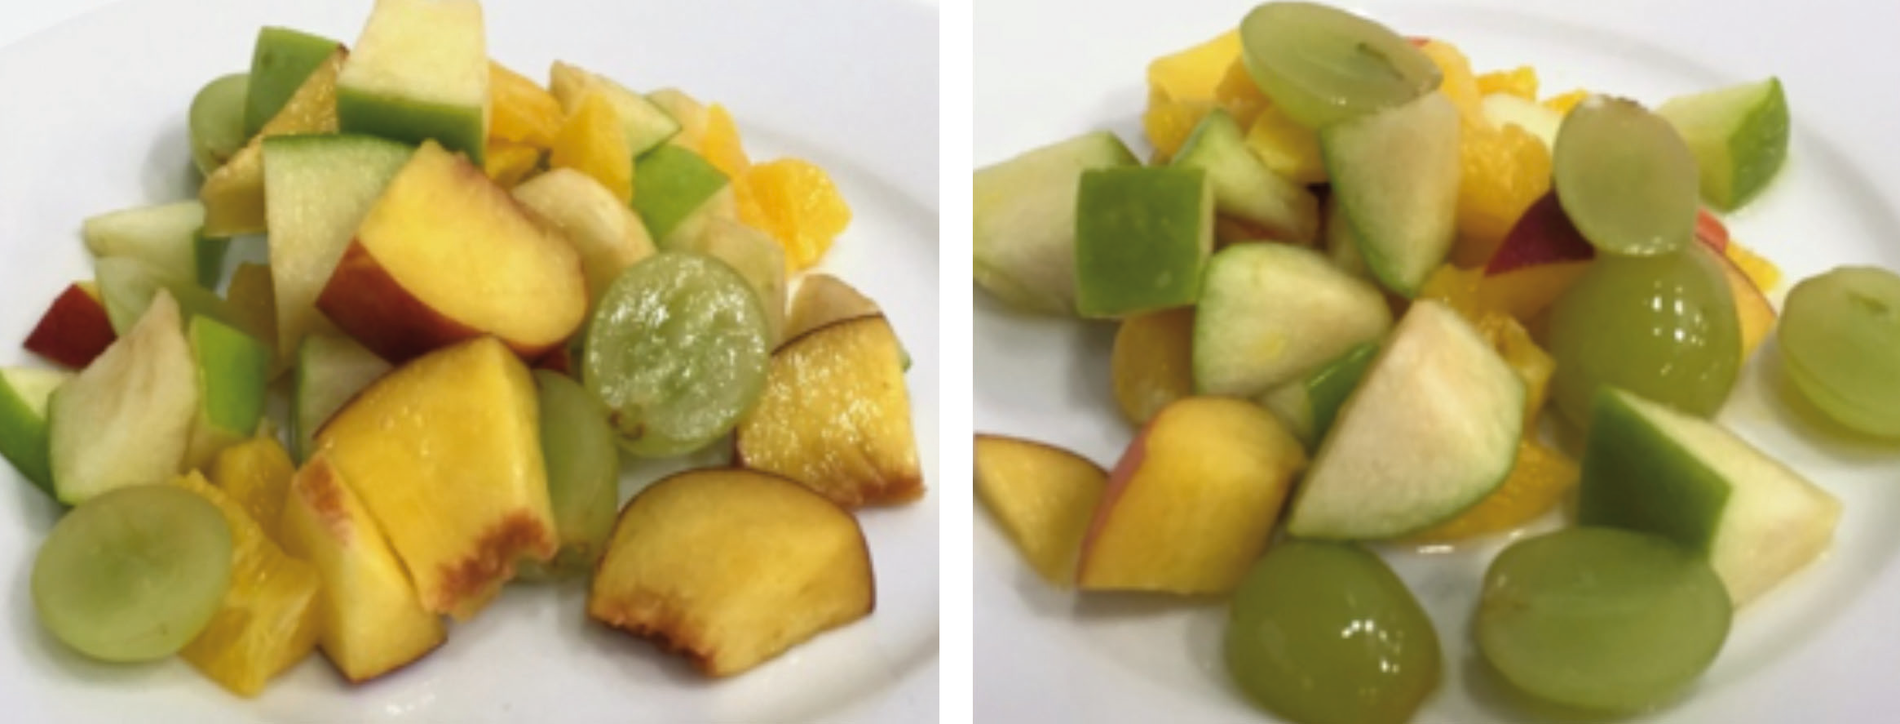 Abbildung 7: Fruchtsalat: links unbehandelt, rechts HPP-behandelt bei 6.000 bar